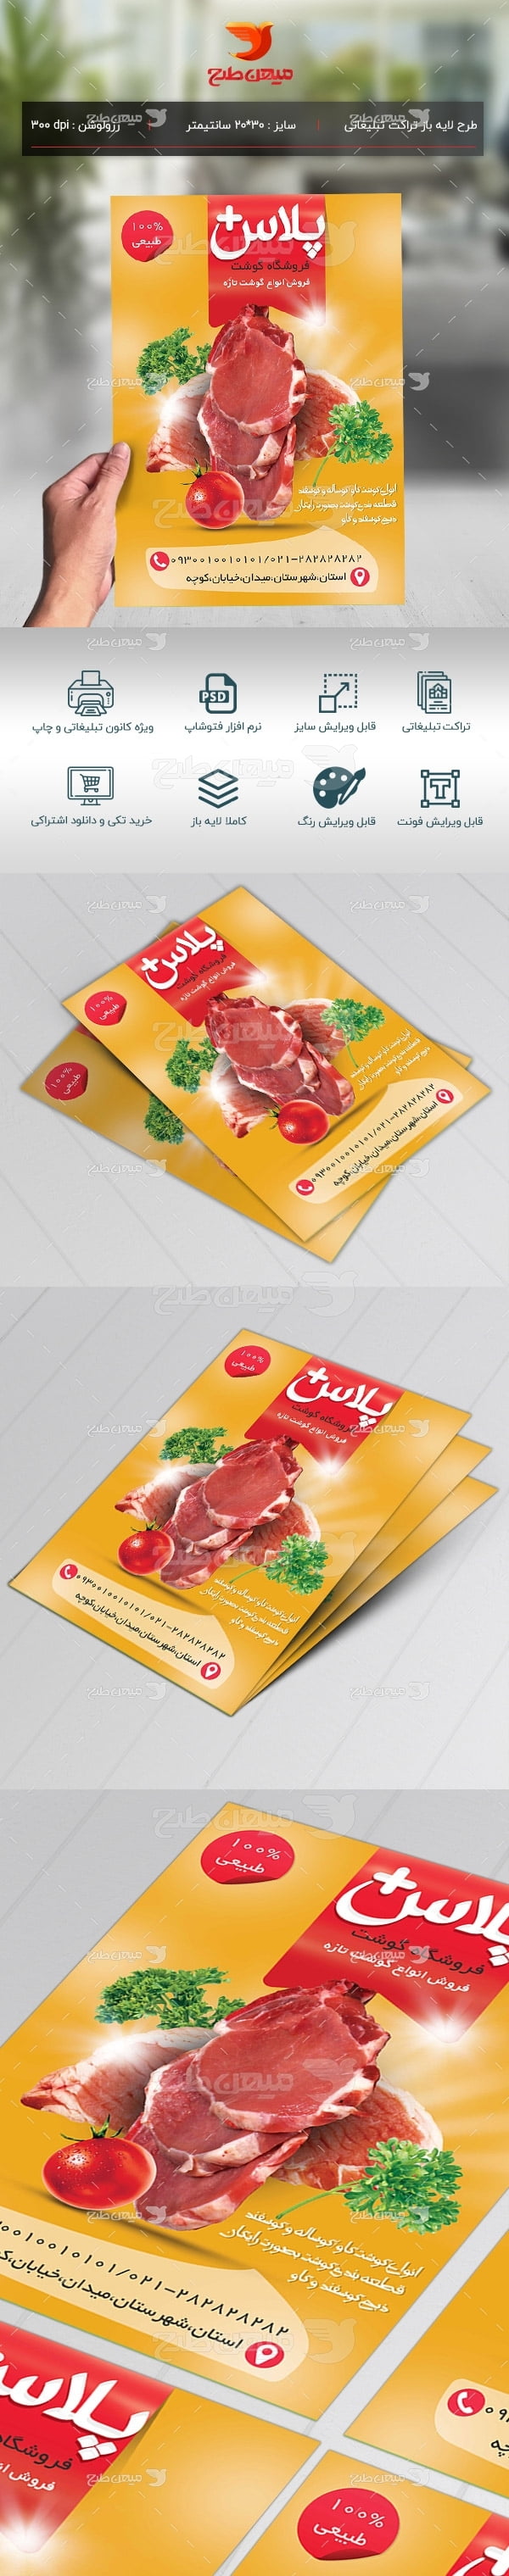 طرح لایه باز تراکت تبلیغاتی فروشگاه گوشت